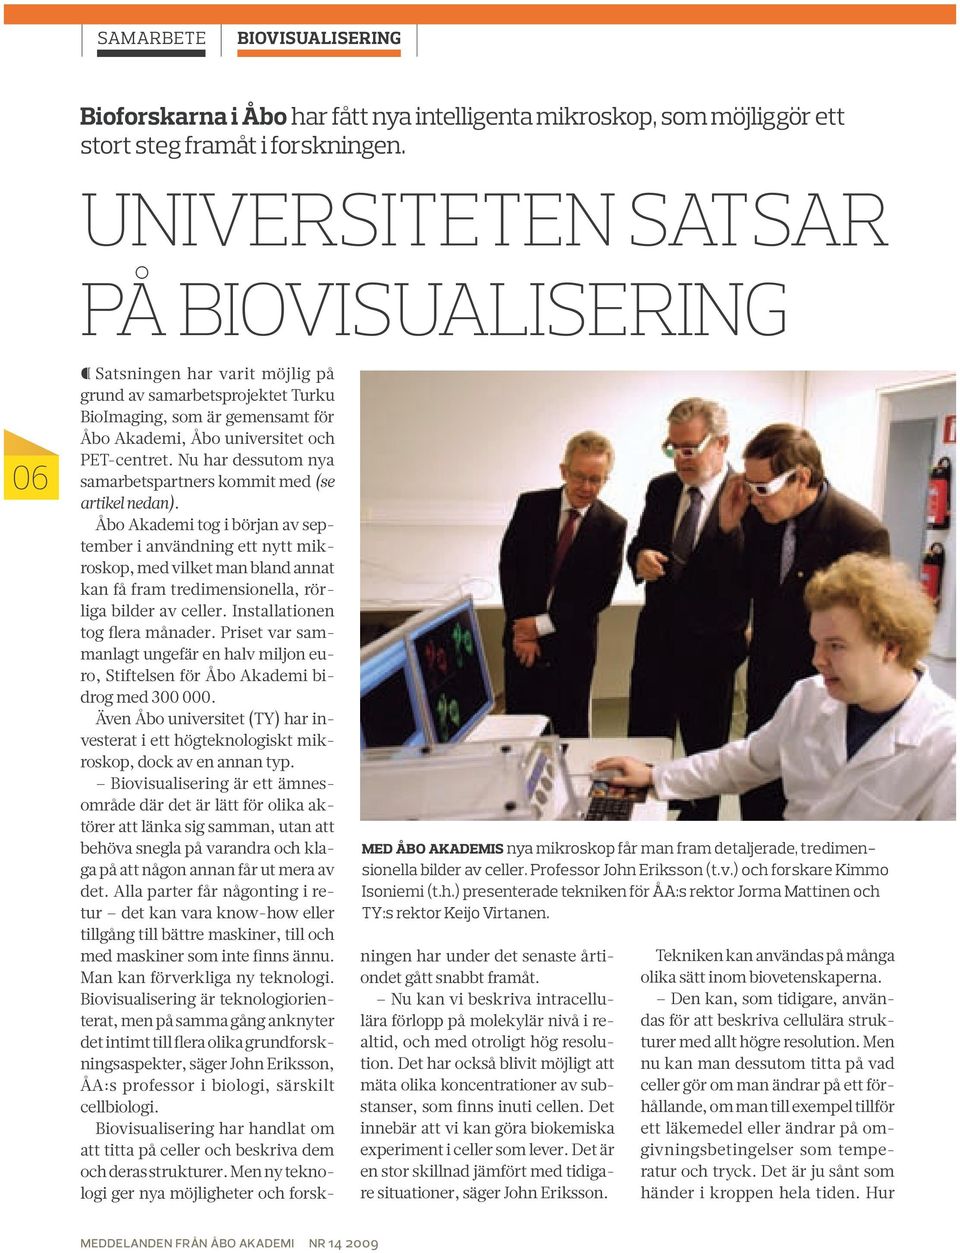 Eriksson (t.v.) och forskare Kimmo Isoniemi (t.h.) presenterade tekniken för ÅA:s rektor Jorma Mattinen och TY:s rektor Keijo Virtanen.